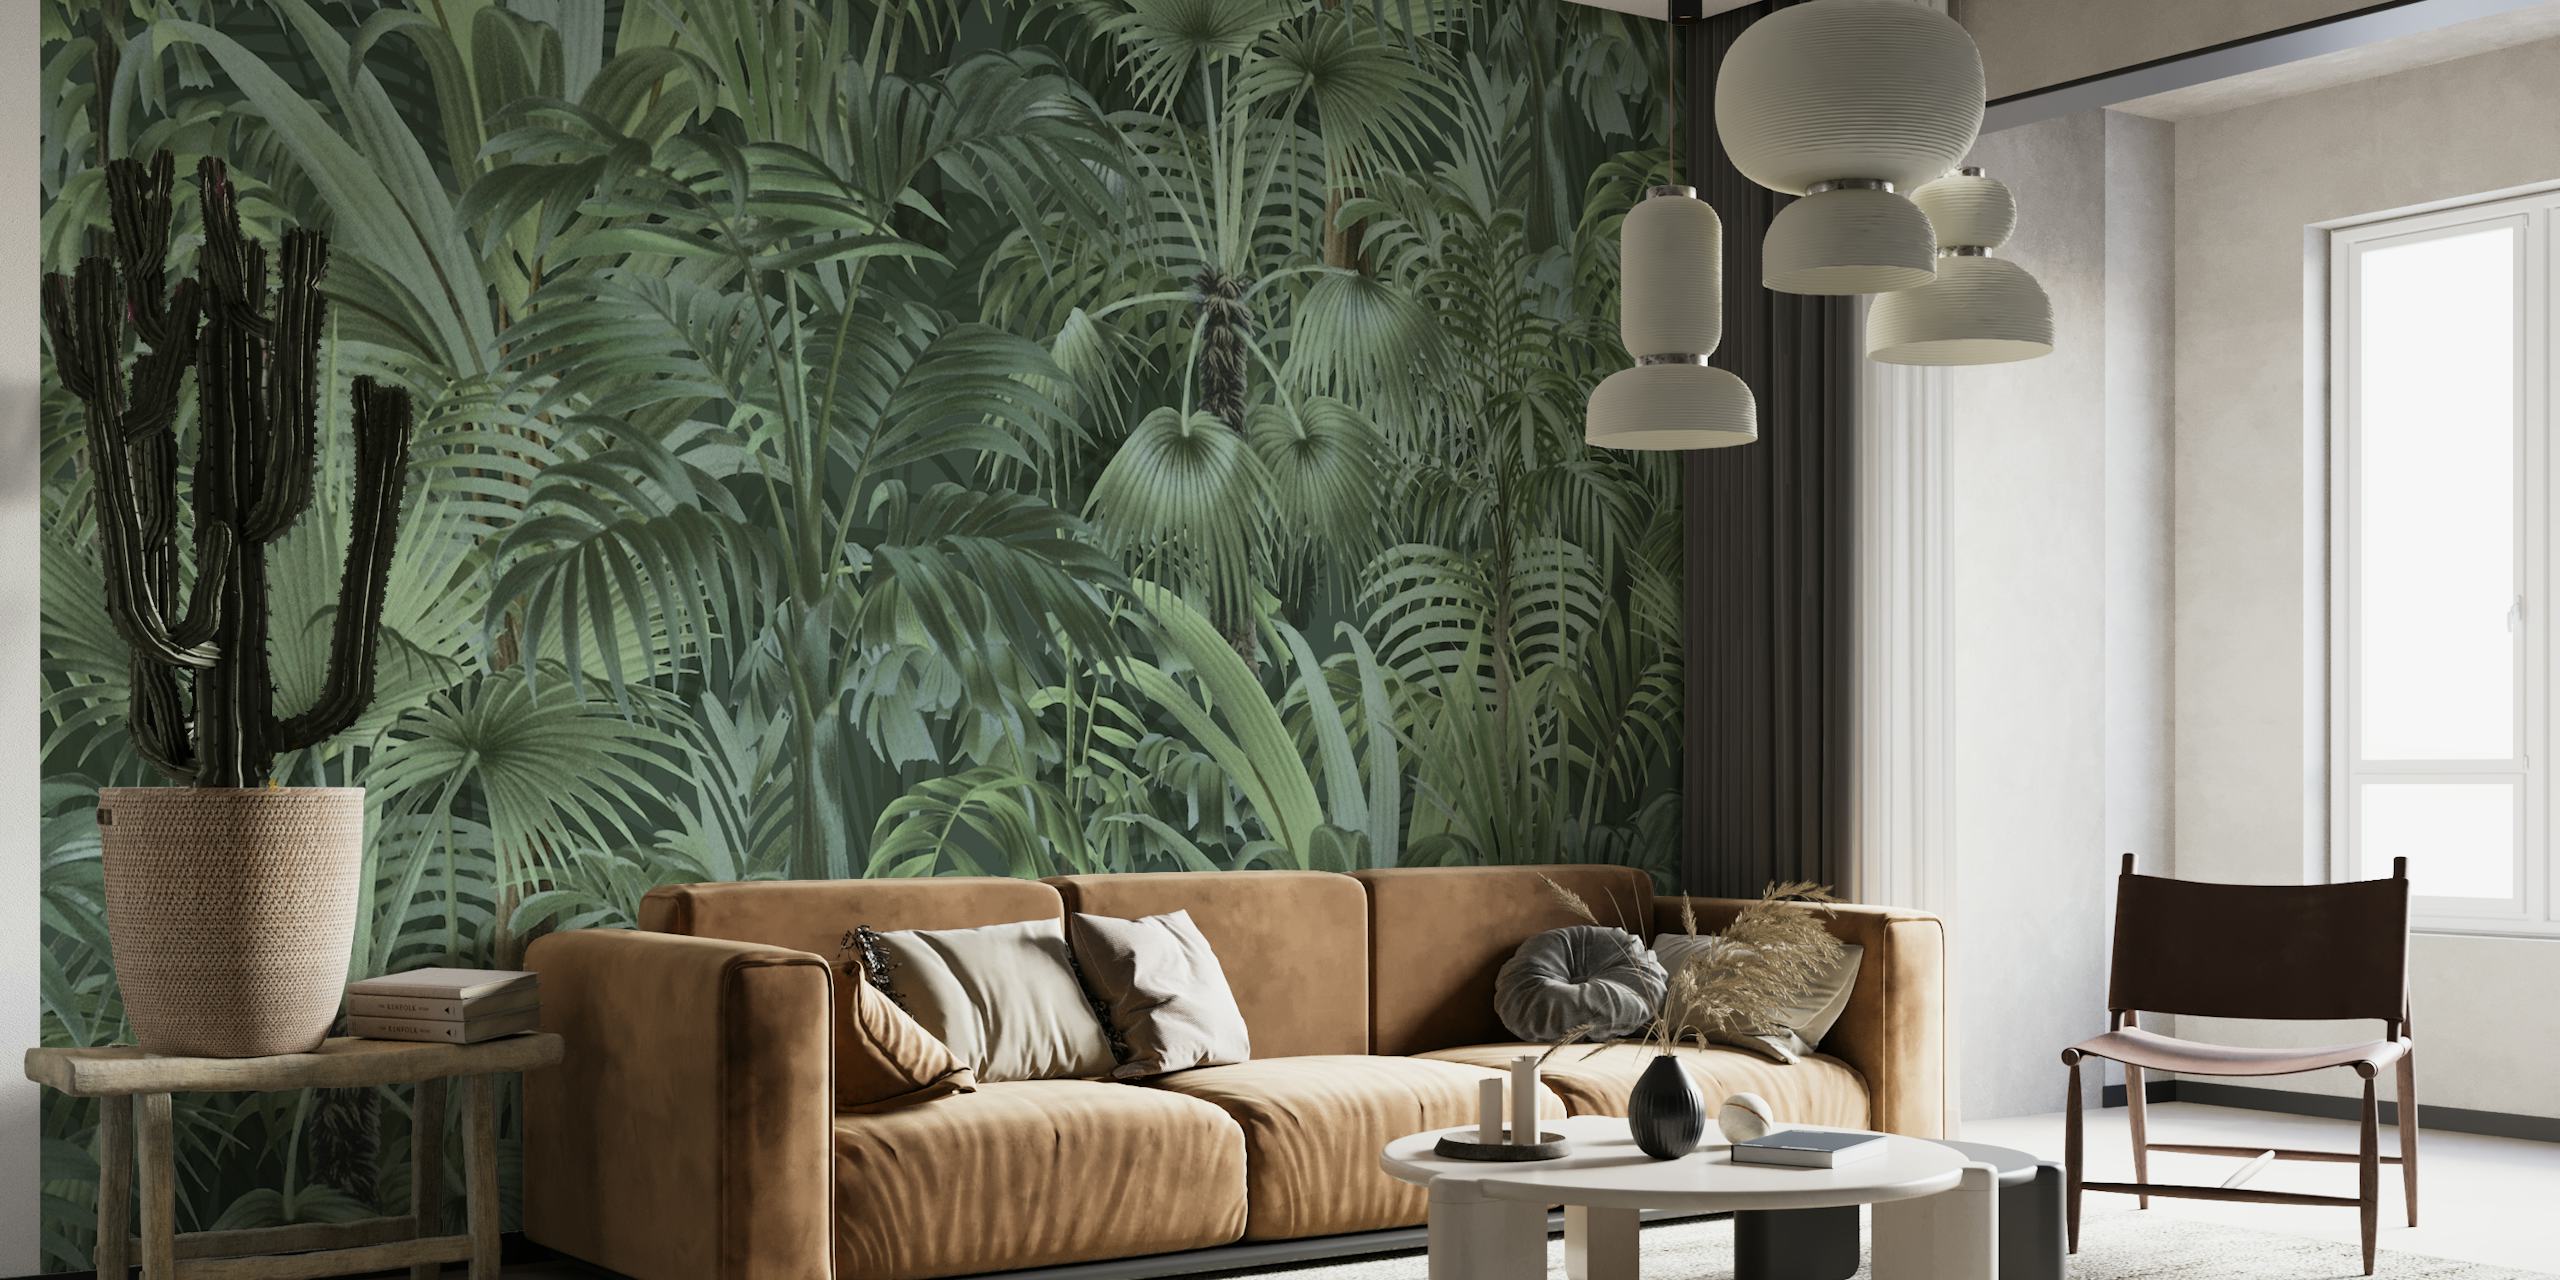 Papier peint mural au feuillage tropical dense avec différentes nuances de vert, créant une atmosphère de jungle enchanteresse.